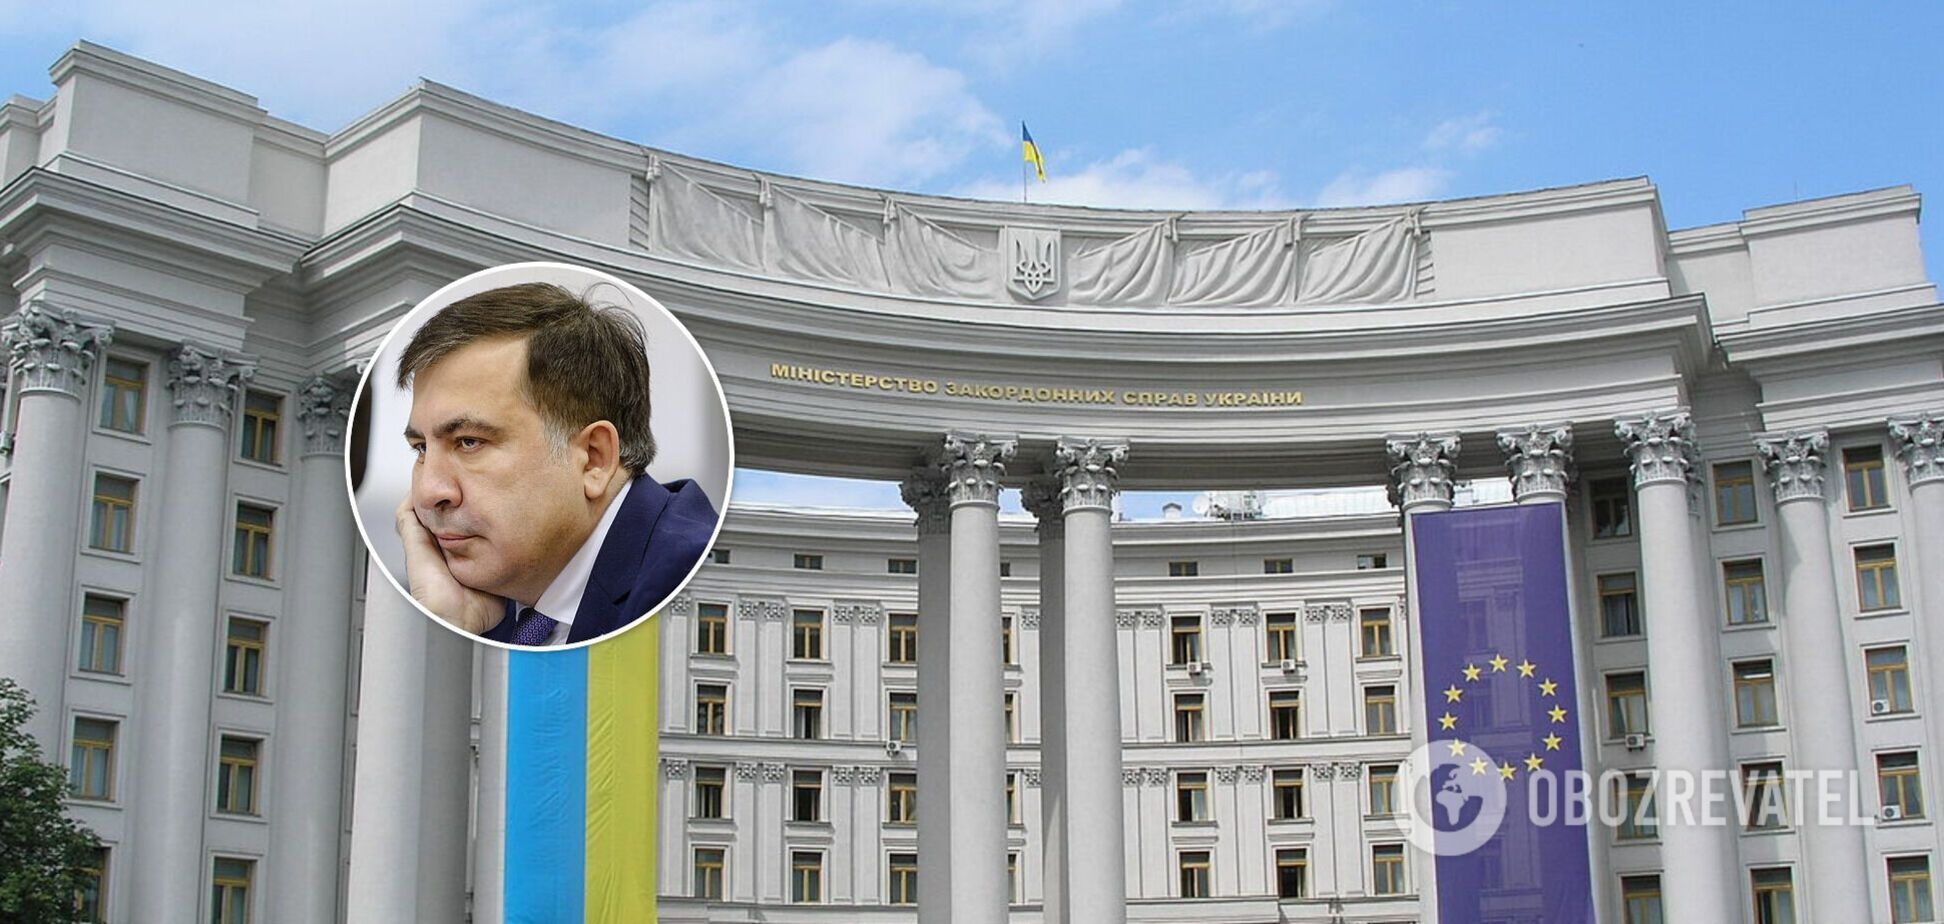 Михаил Саакашвили попал в скандал с МИД Украины